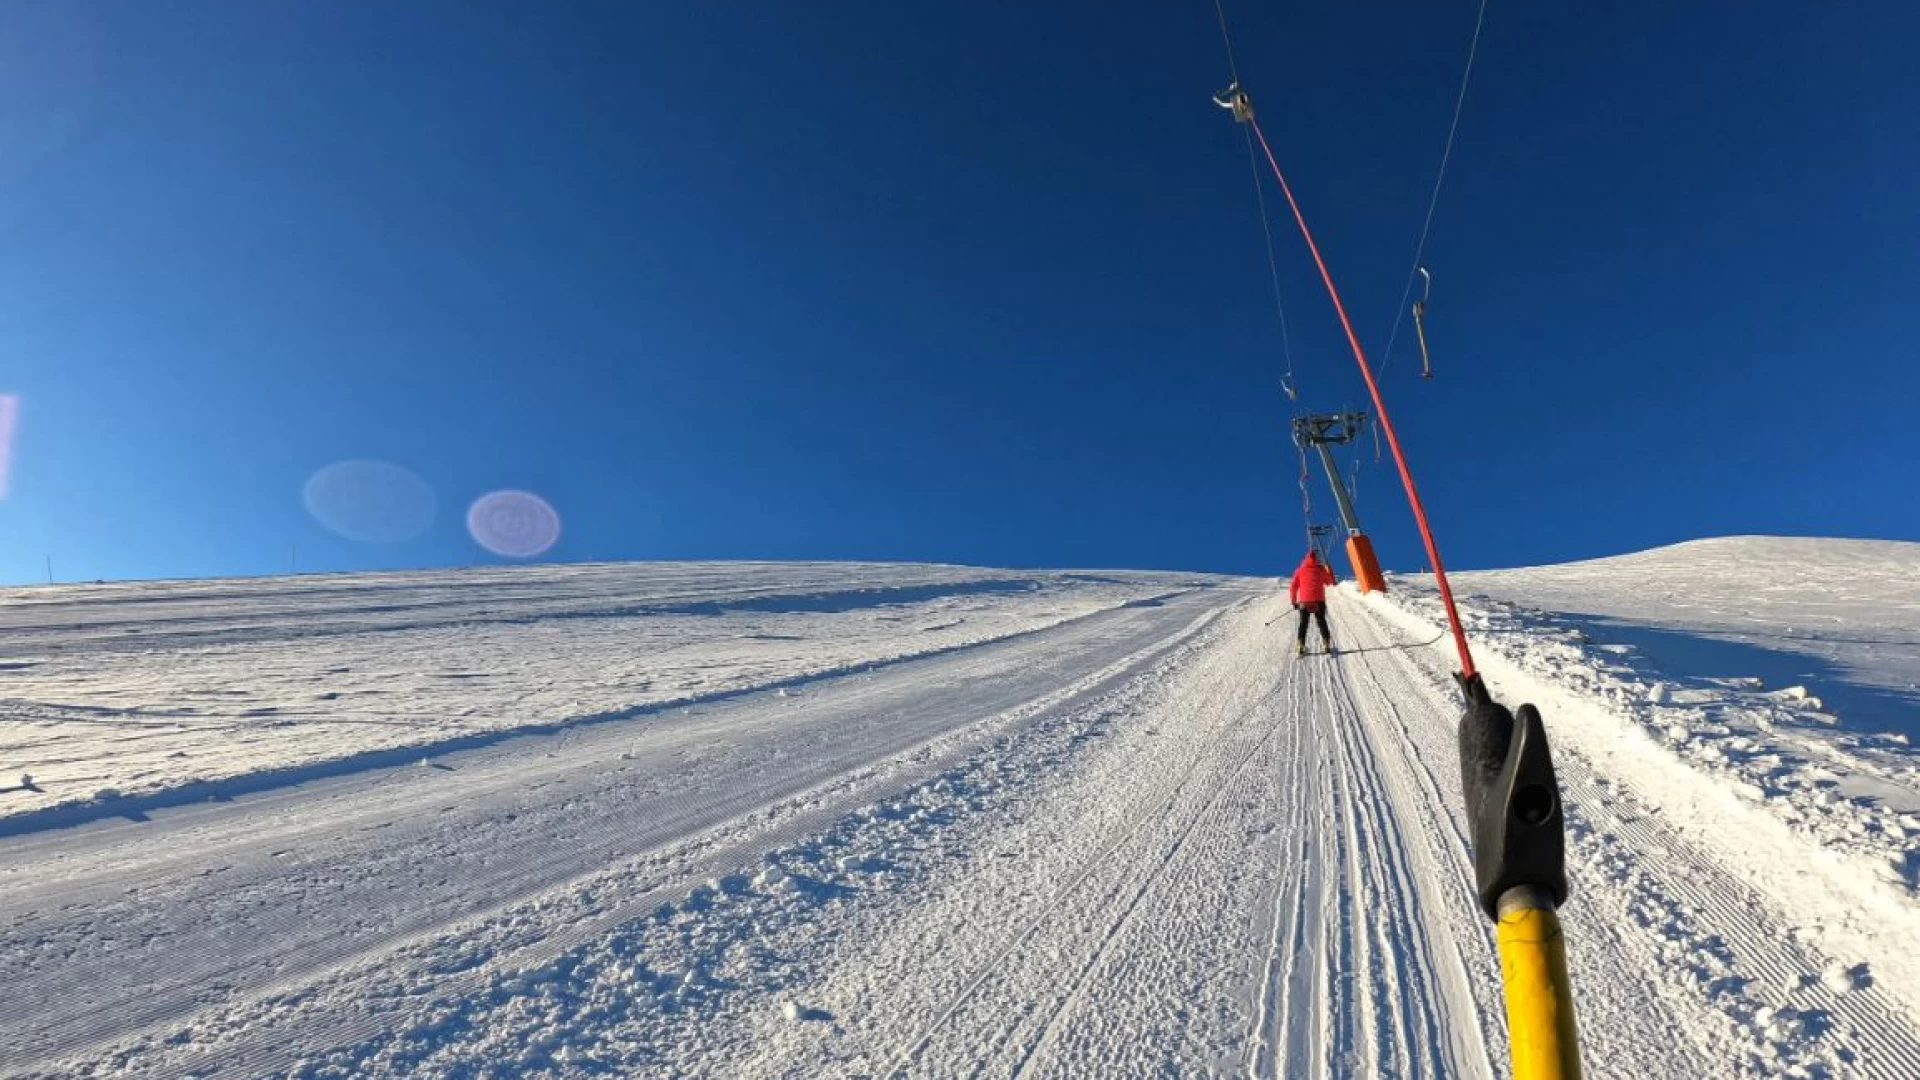 Ski Pass Alto Sangro, da oggi nuove aperture di piste del Comprensorio. Si potrà sciare sulle piste della Cabinovia Pallottieri e Valle Verde.